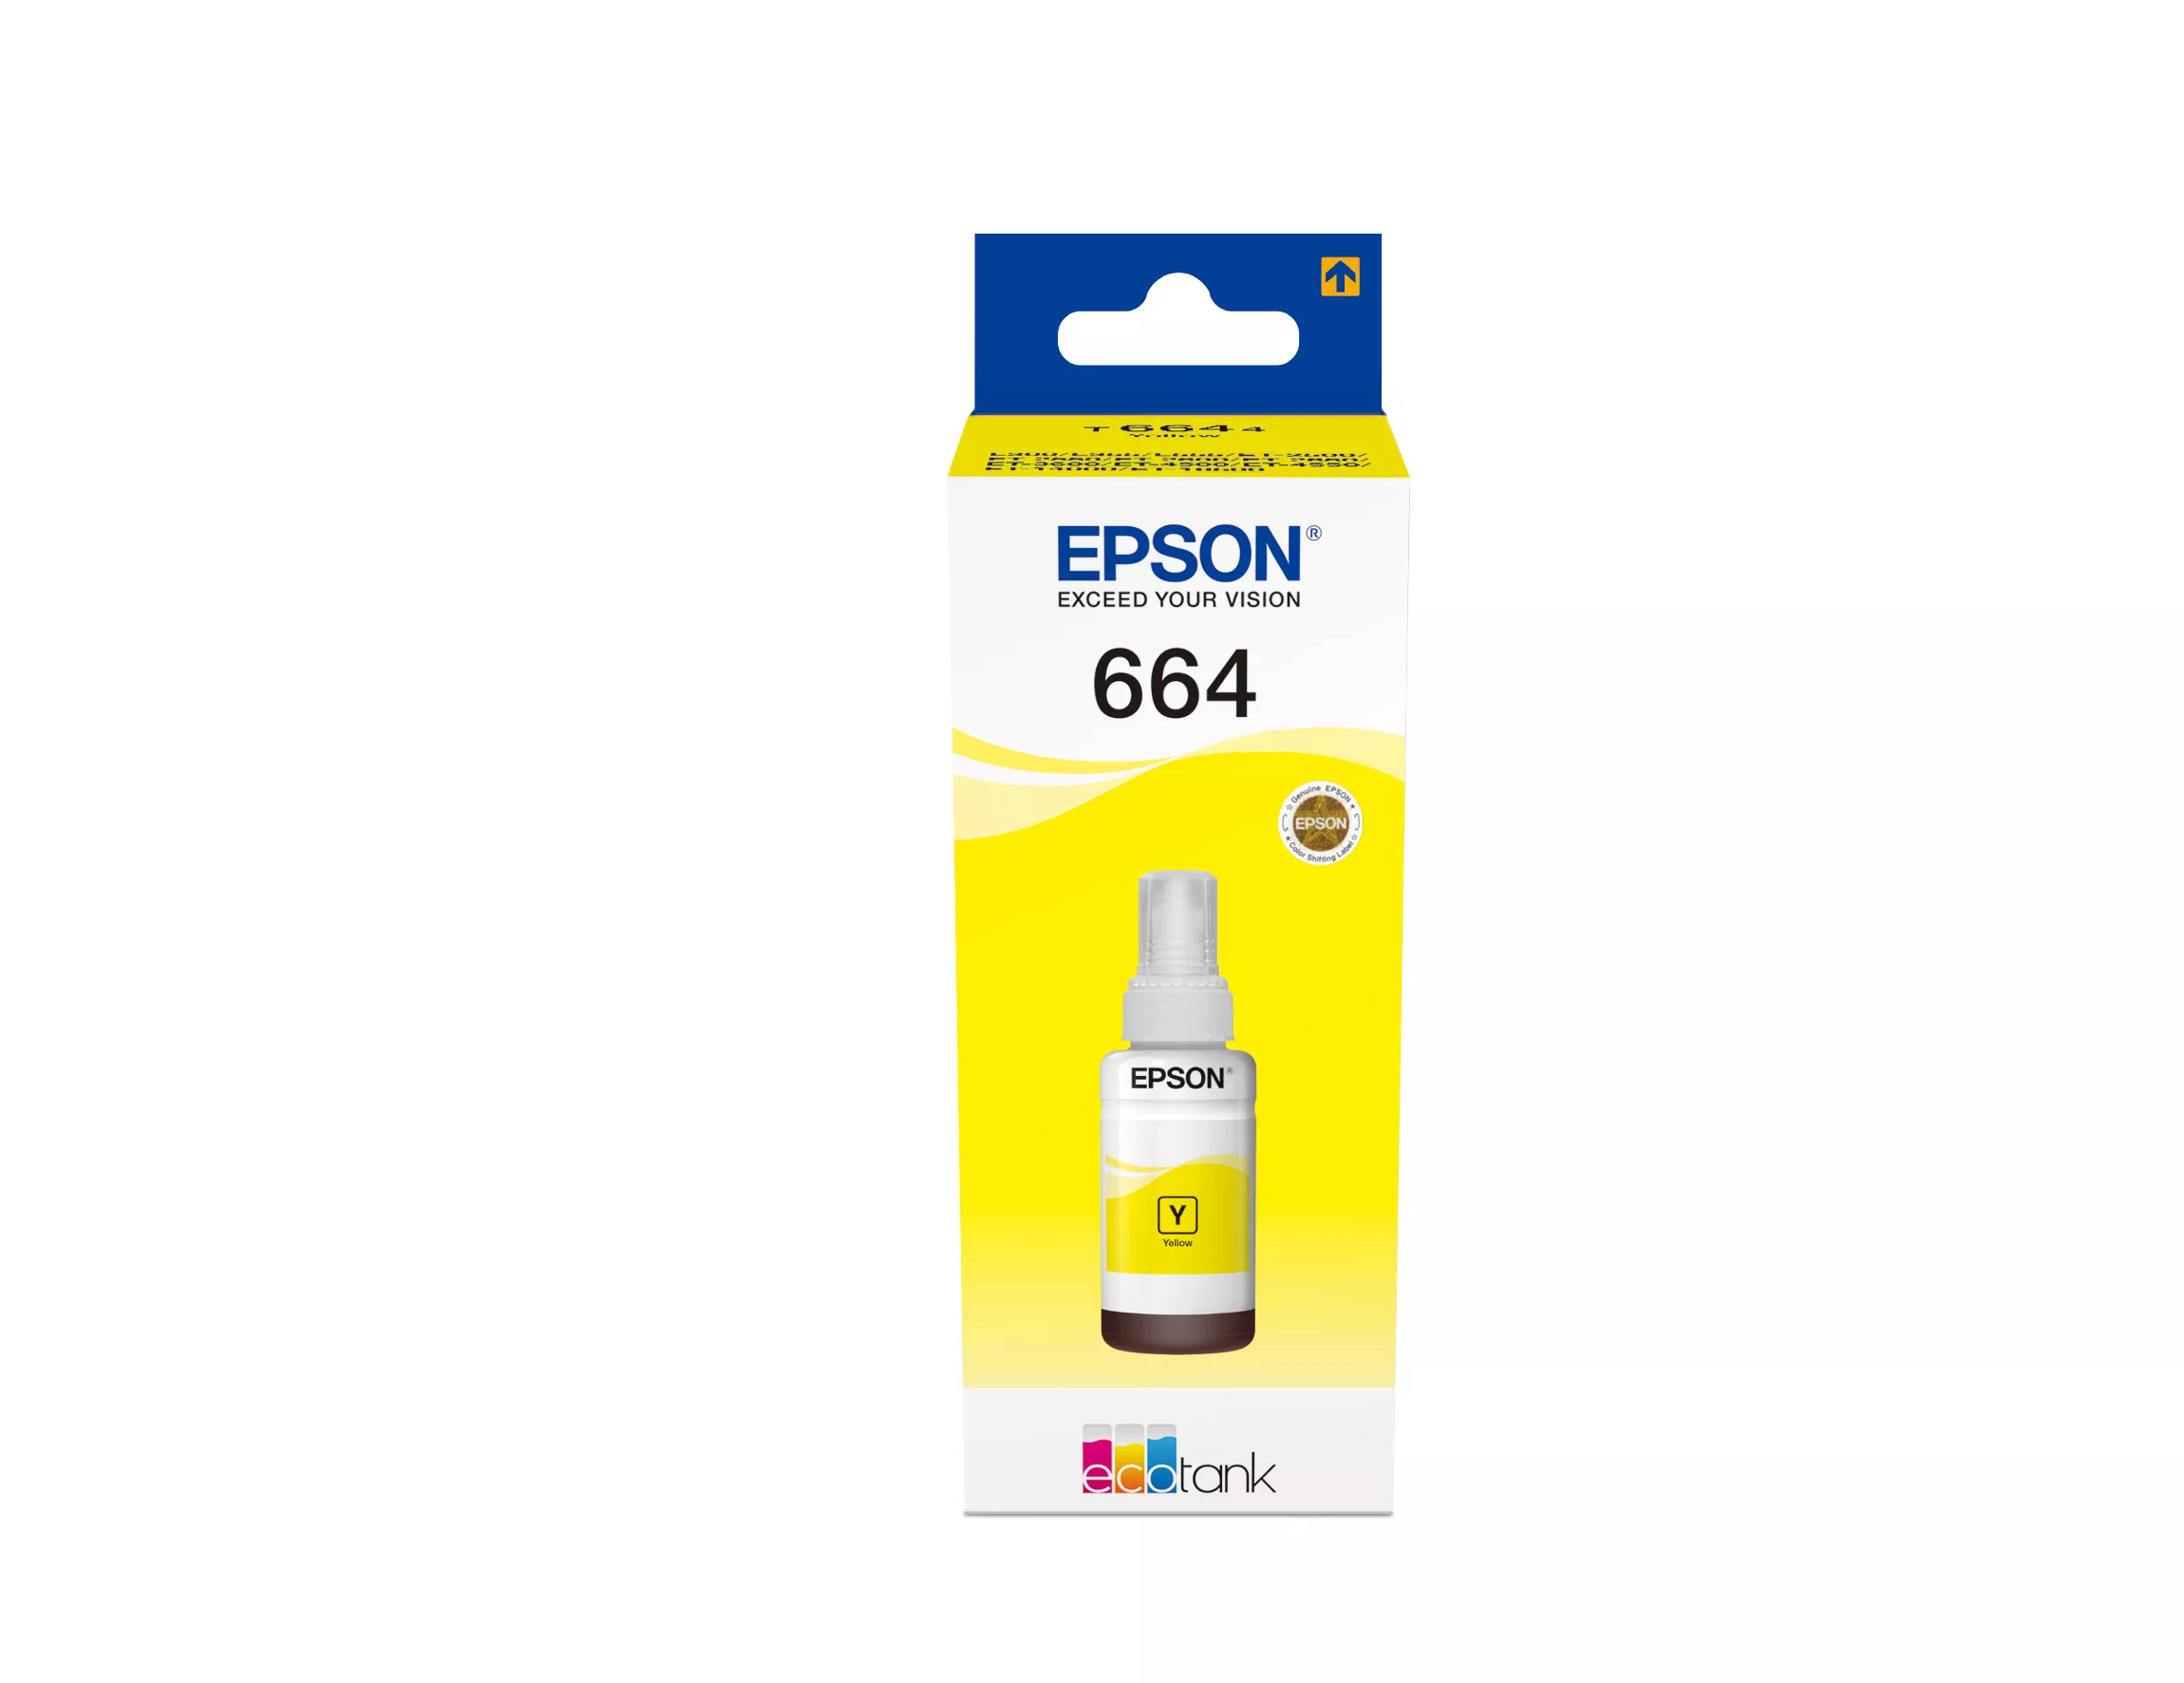 Achat EPSON T6644 cartouche d encre jaune 70ml pack de 1 sur hello RSE